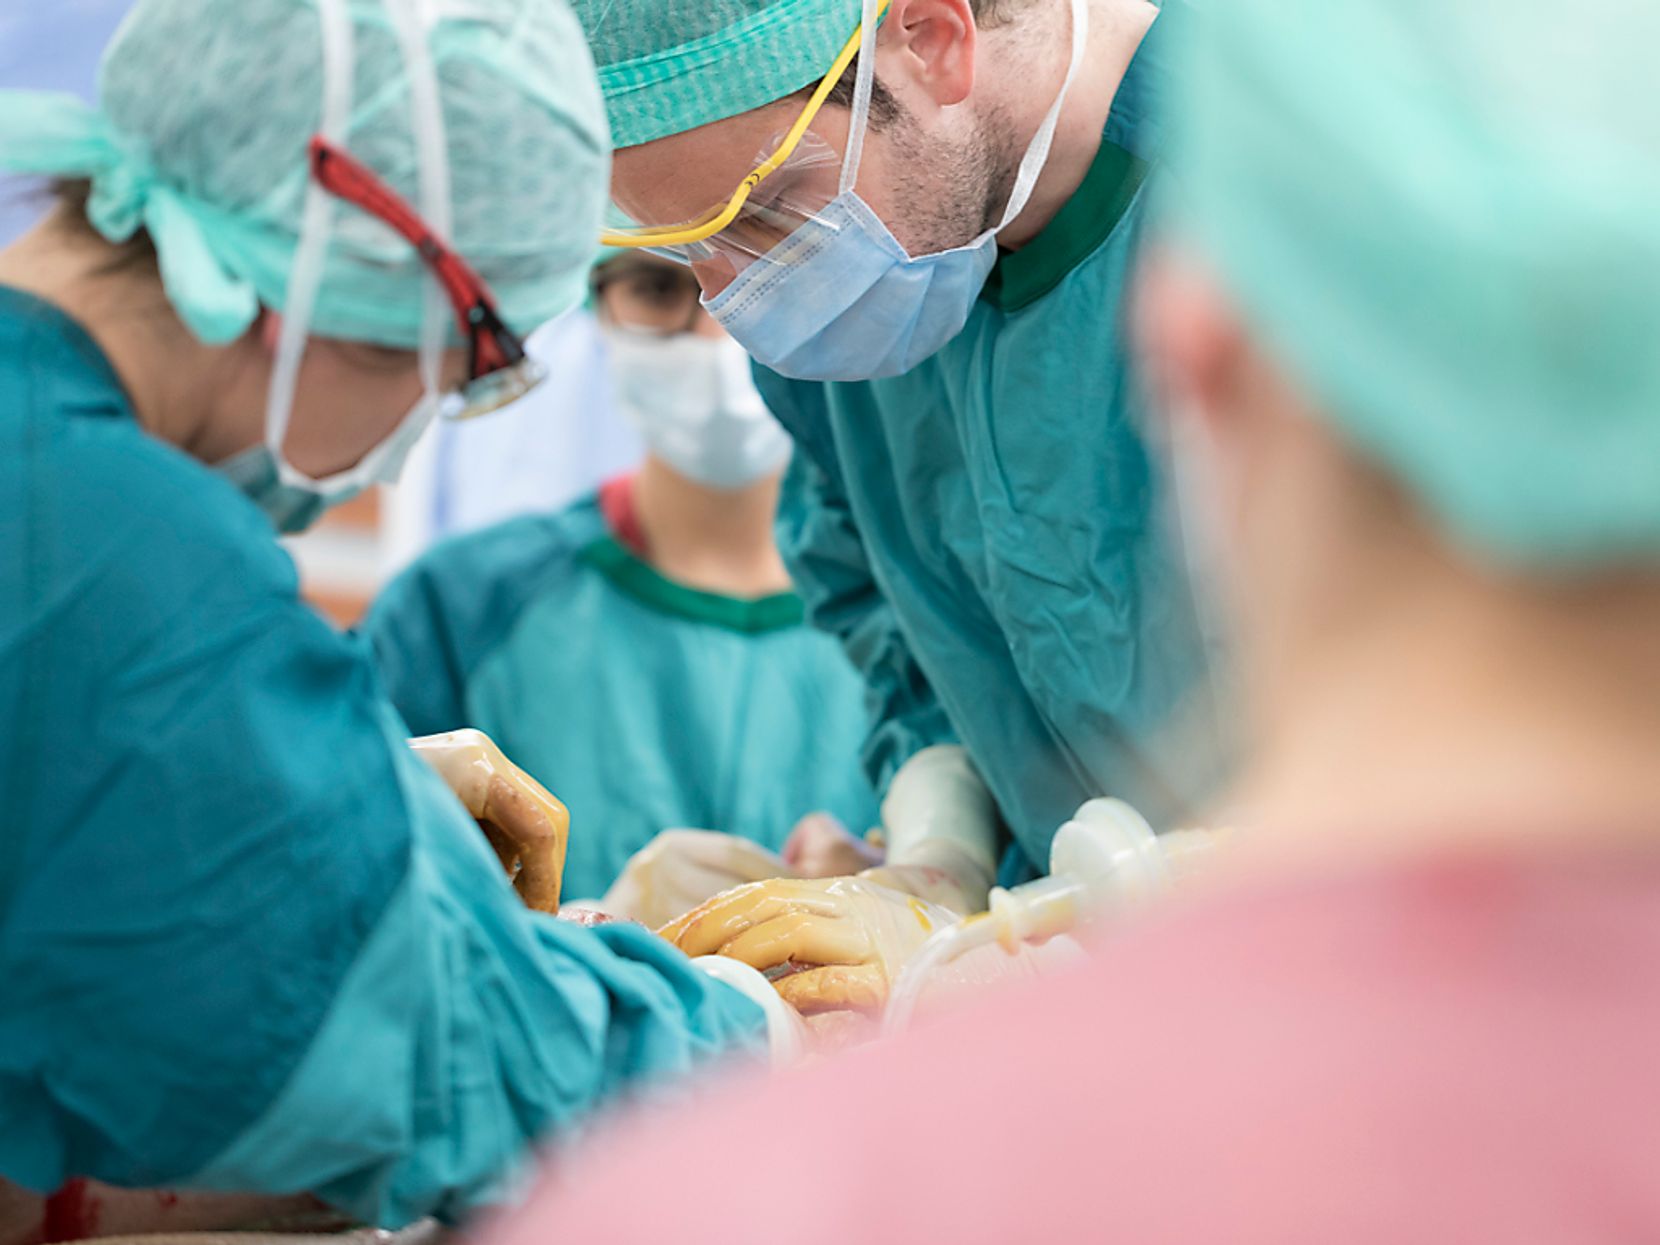 Man sieht mehrere Ärzte und Krankenhauspersonal in grünen Überwürfen und mit Mundmasken bei einer Operation.